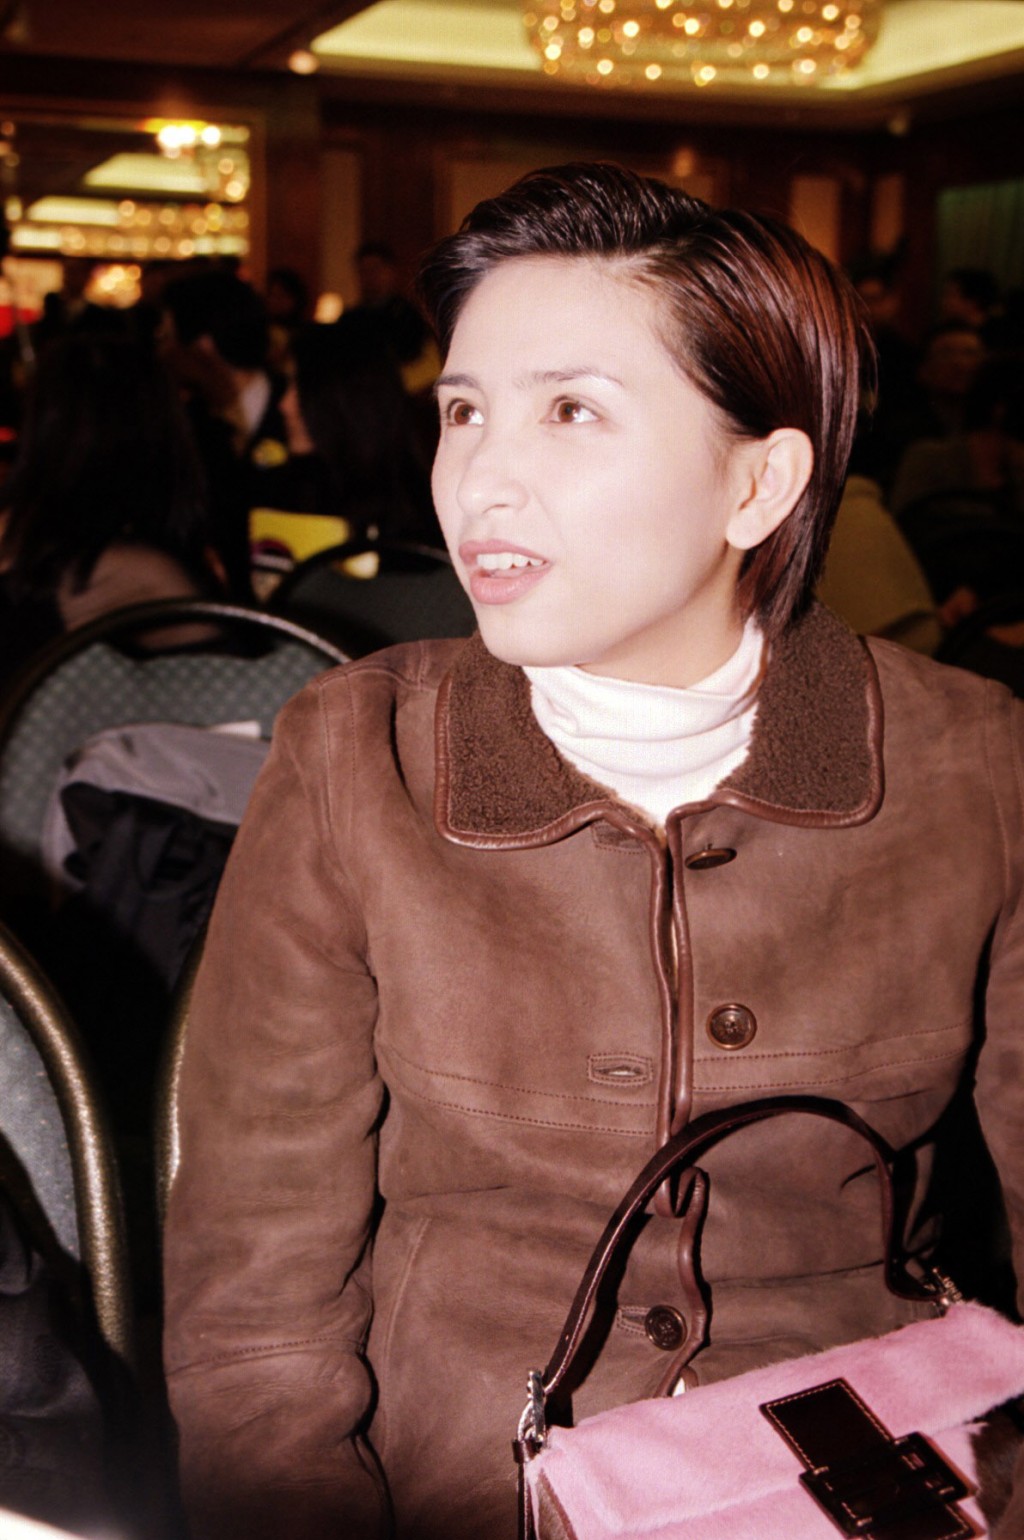 吴婉芳2000年代初开始留长发。